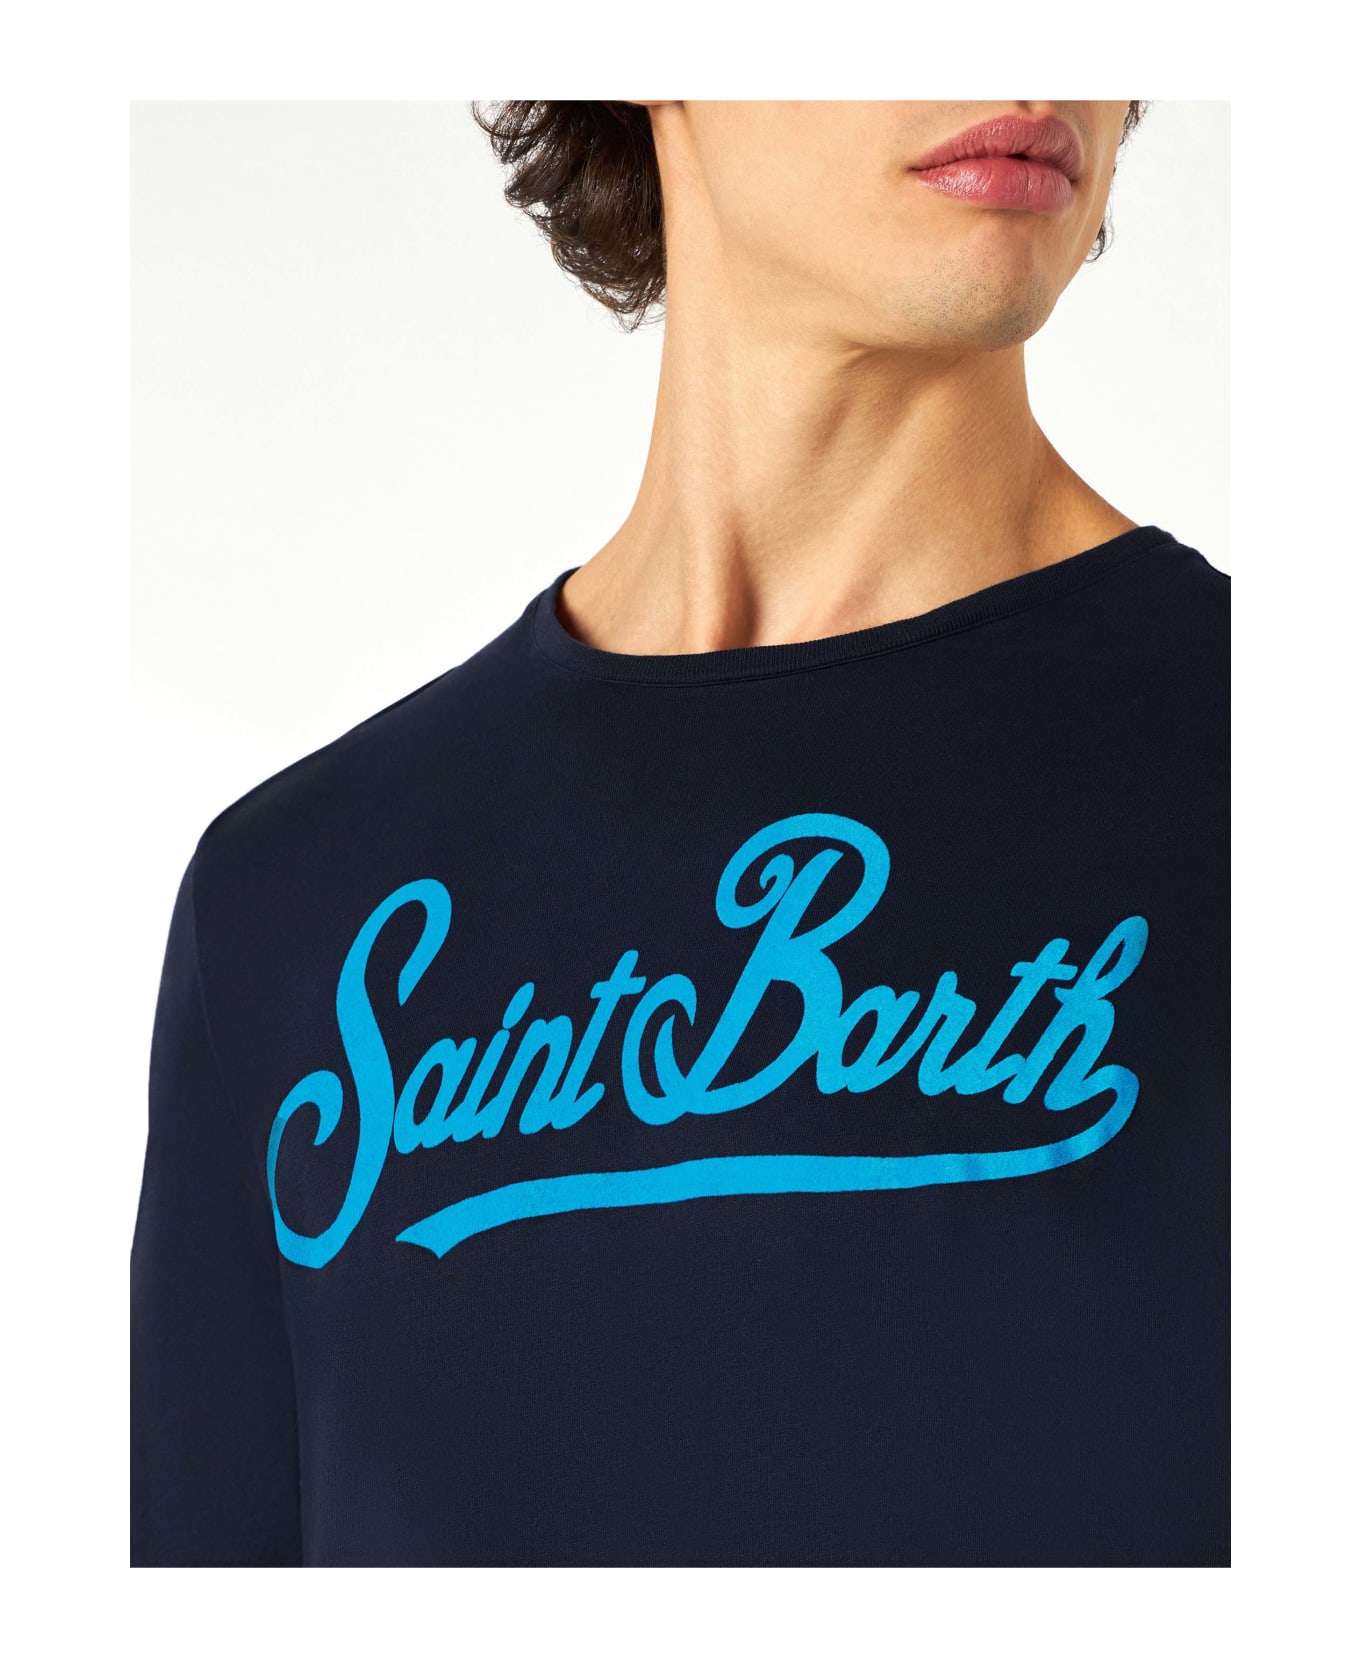 MC2 Saint Barth Man Long-sleeves T-shirt With Saint Barth Print - BLUE